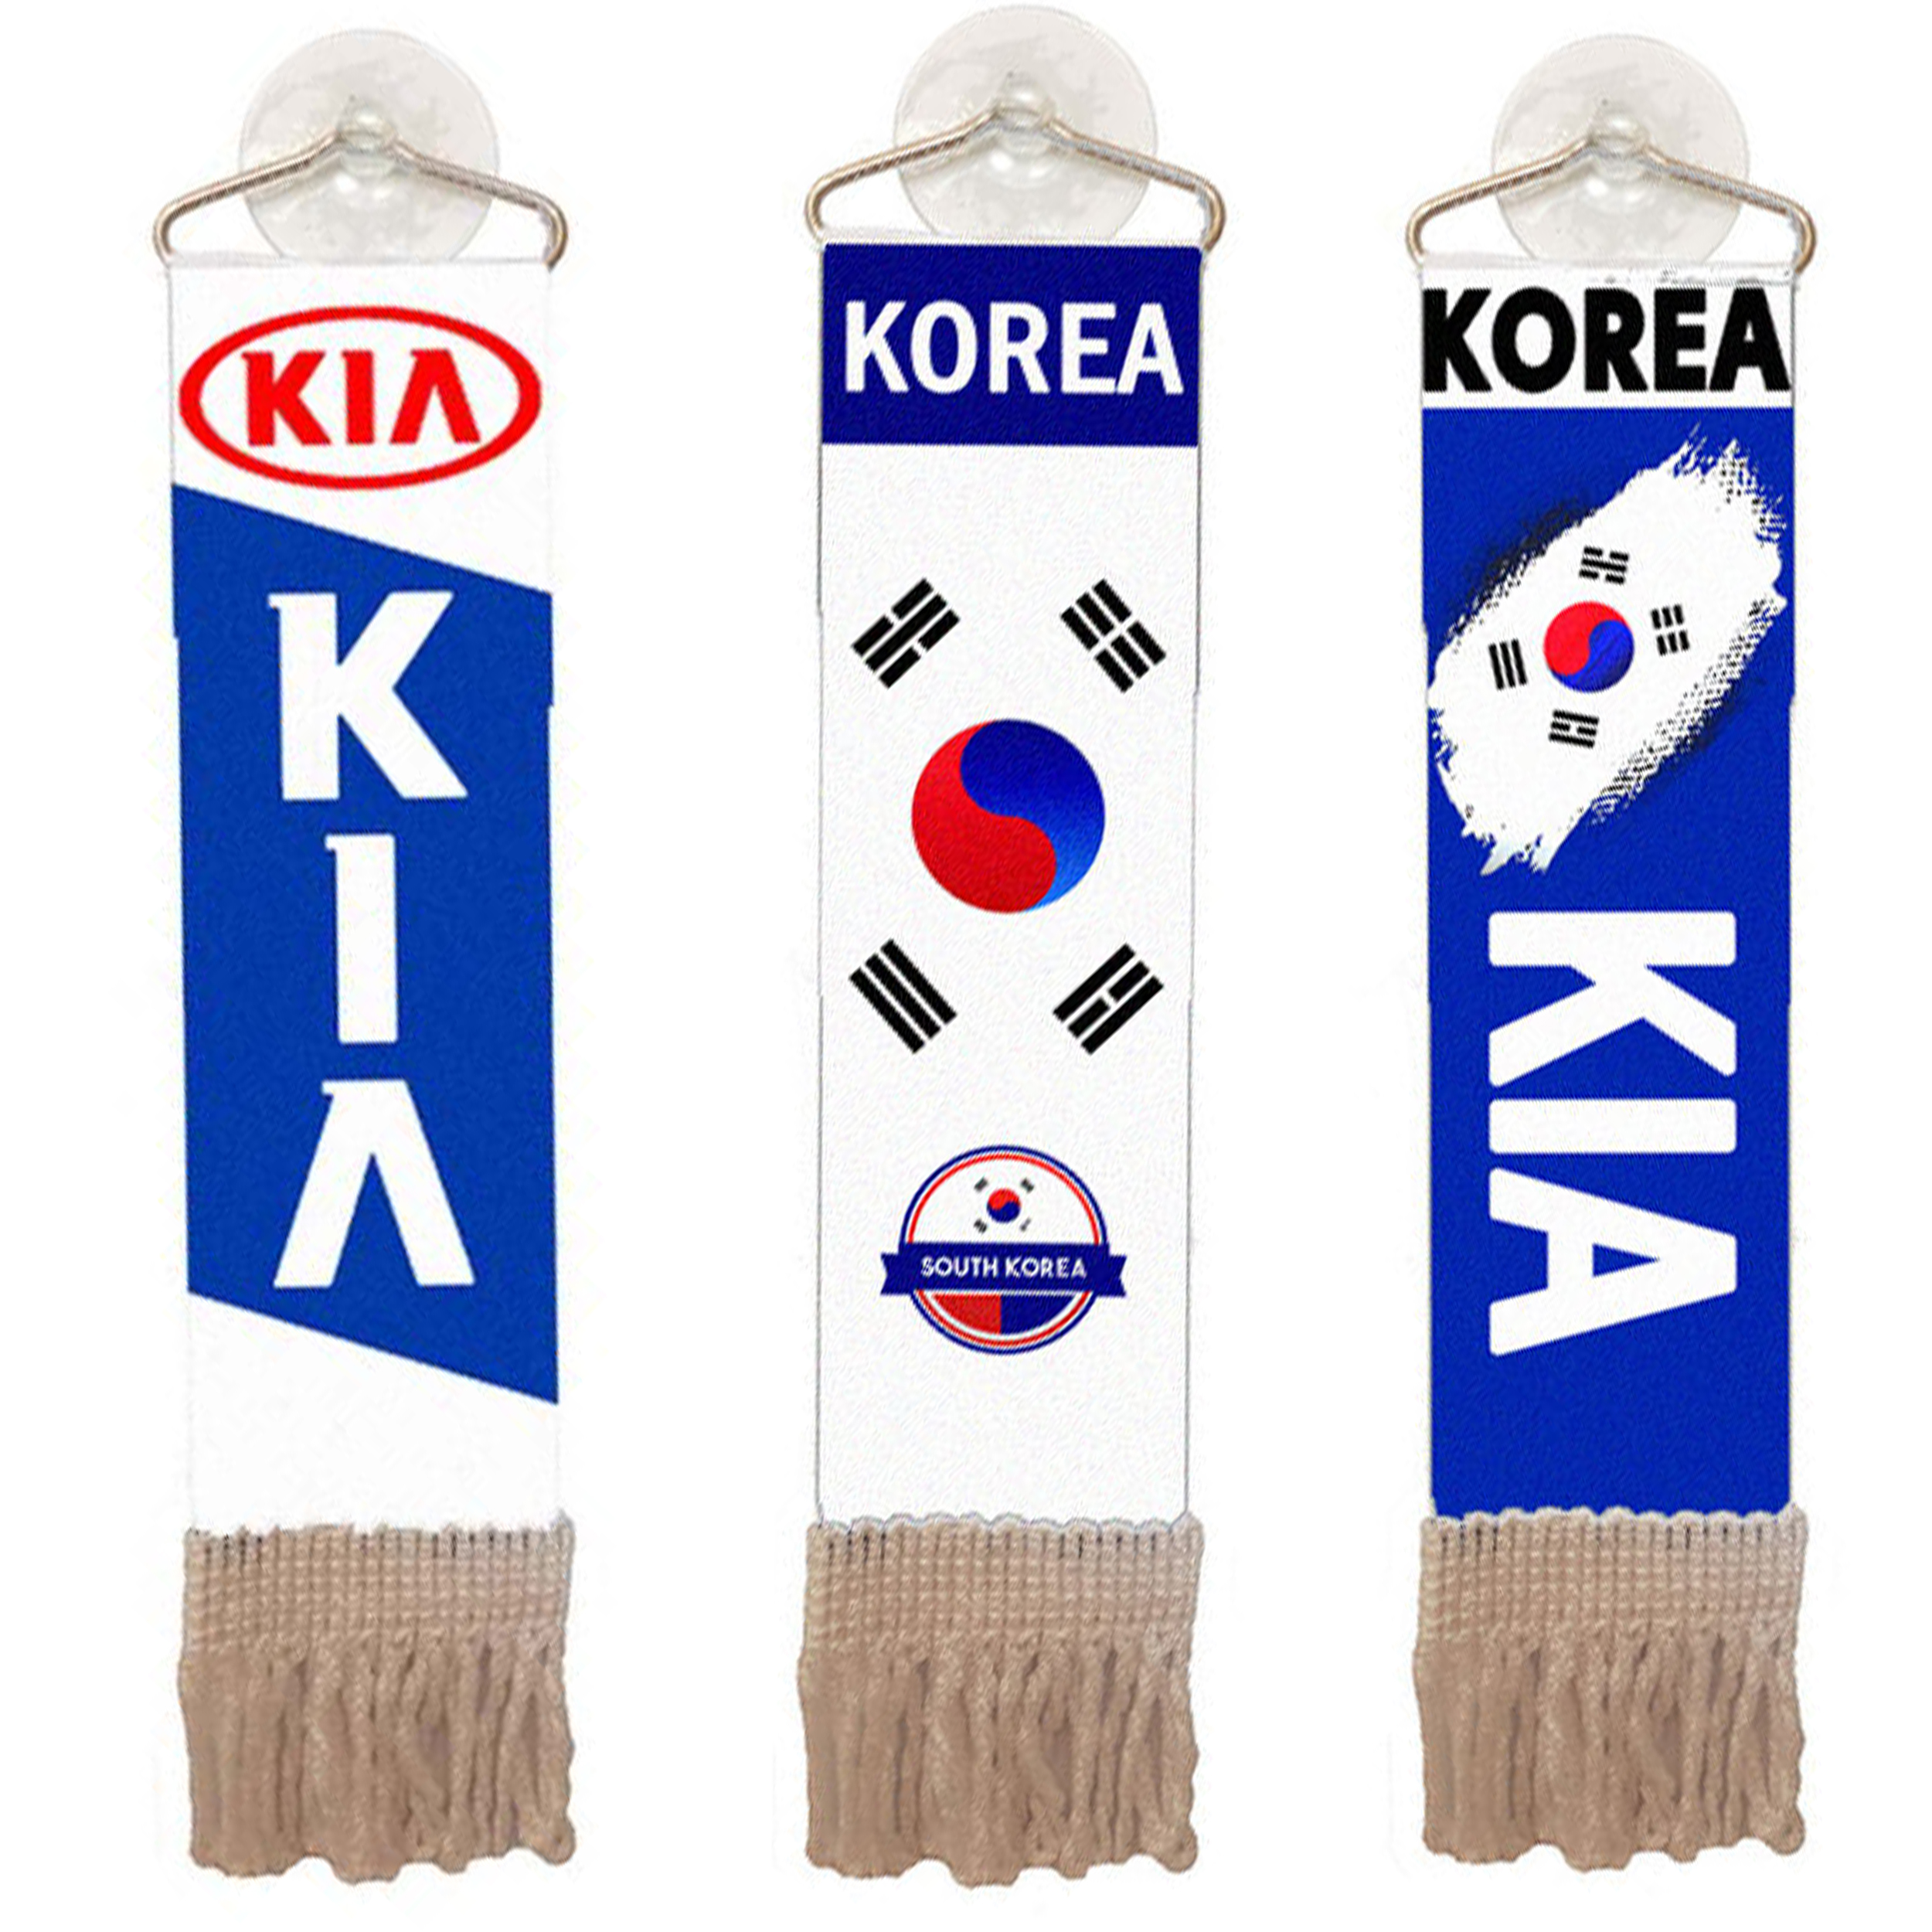 آویز تزئینی خودرو مدل پرچم طرح کره کد 2017 بسته سه عددی